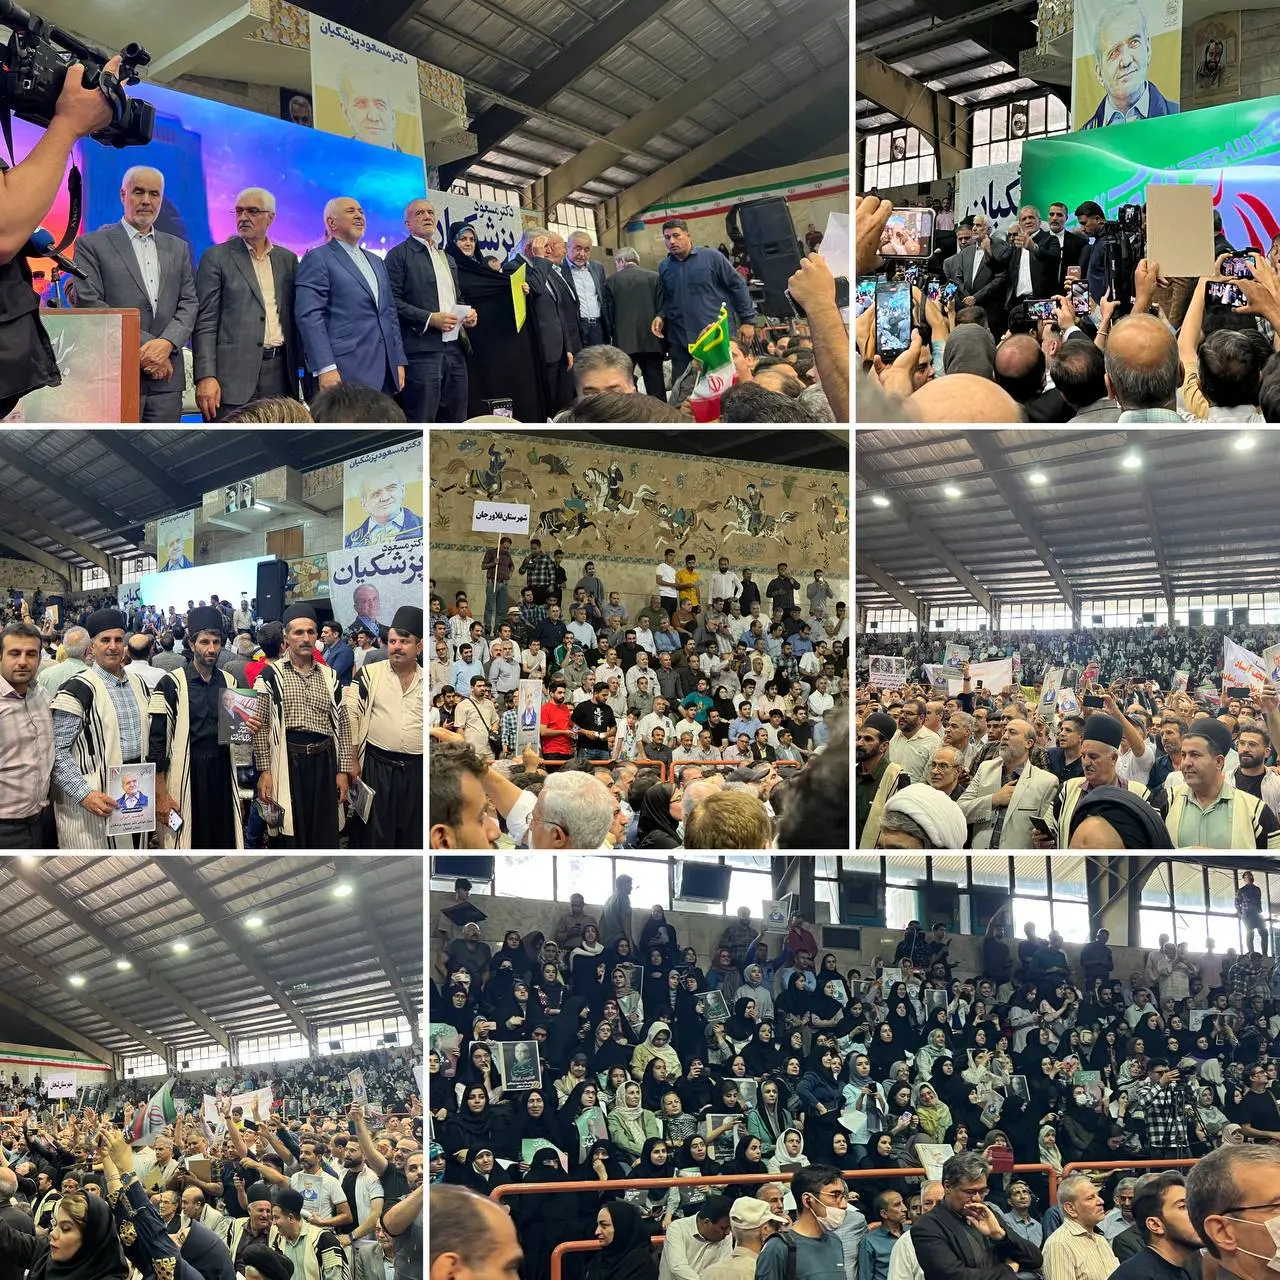 حضور پزشکیان در دیار زاینده‌رود/ استقبال دانشگاهیان اصفهان از ظریف پس از سخنان طوفانی‌اش/ رای ندادن رای دادن به اقلیت است